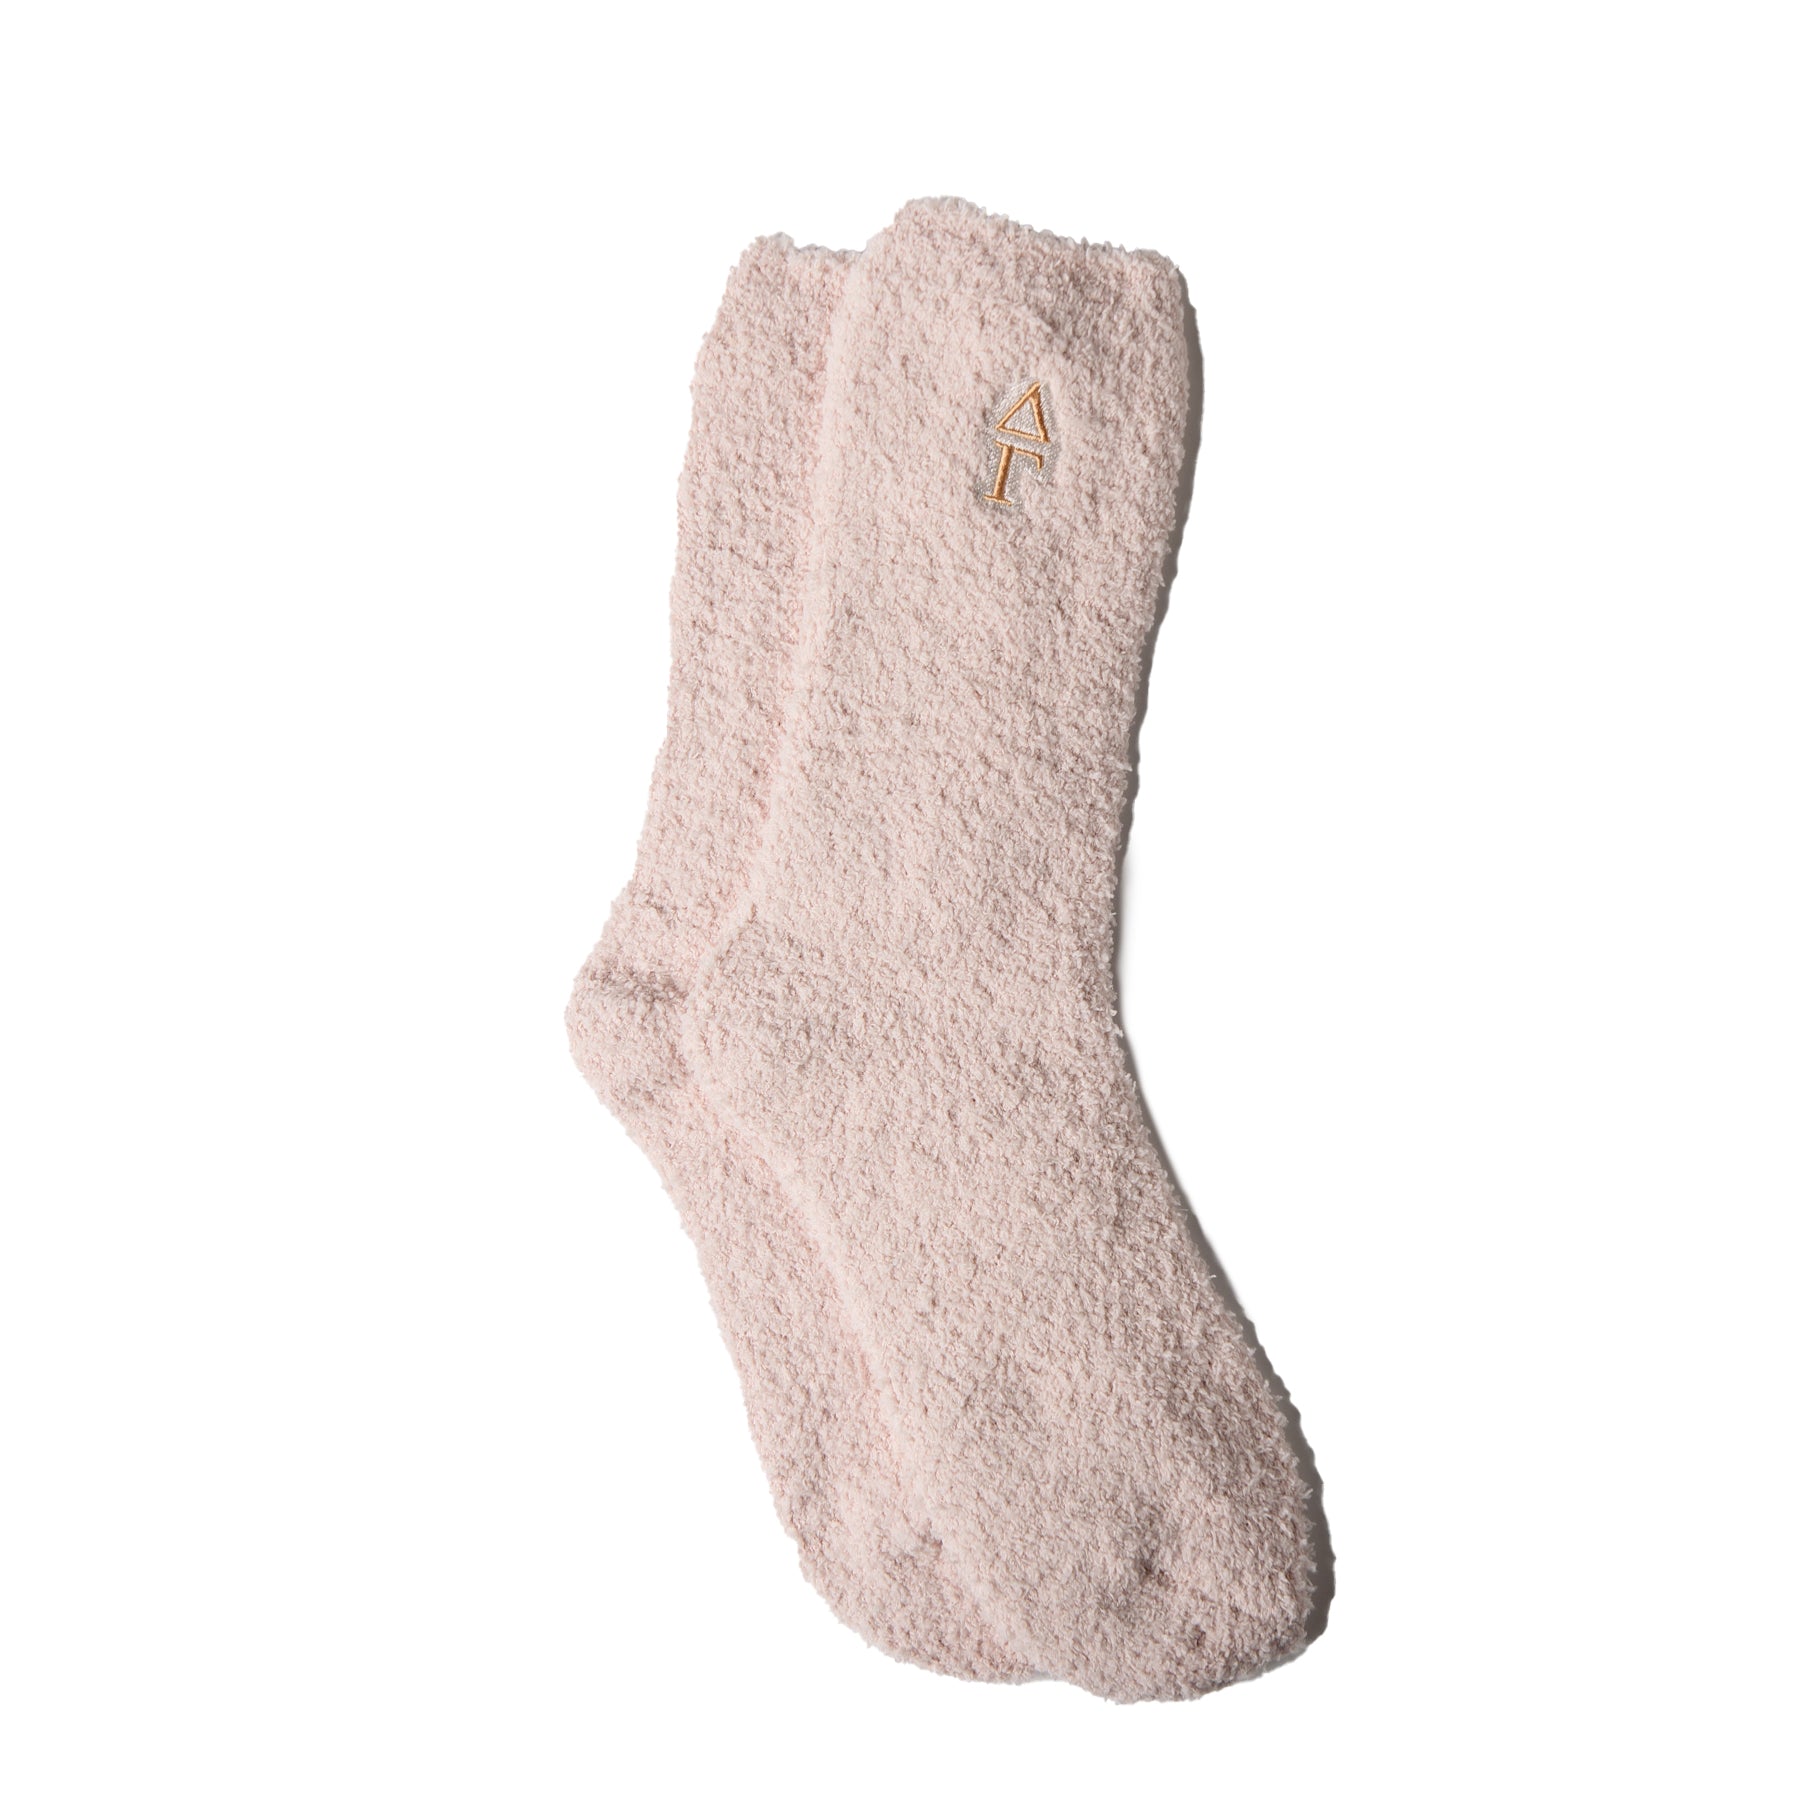 Cozy Plush Socks